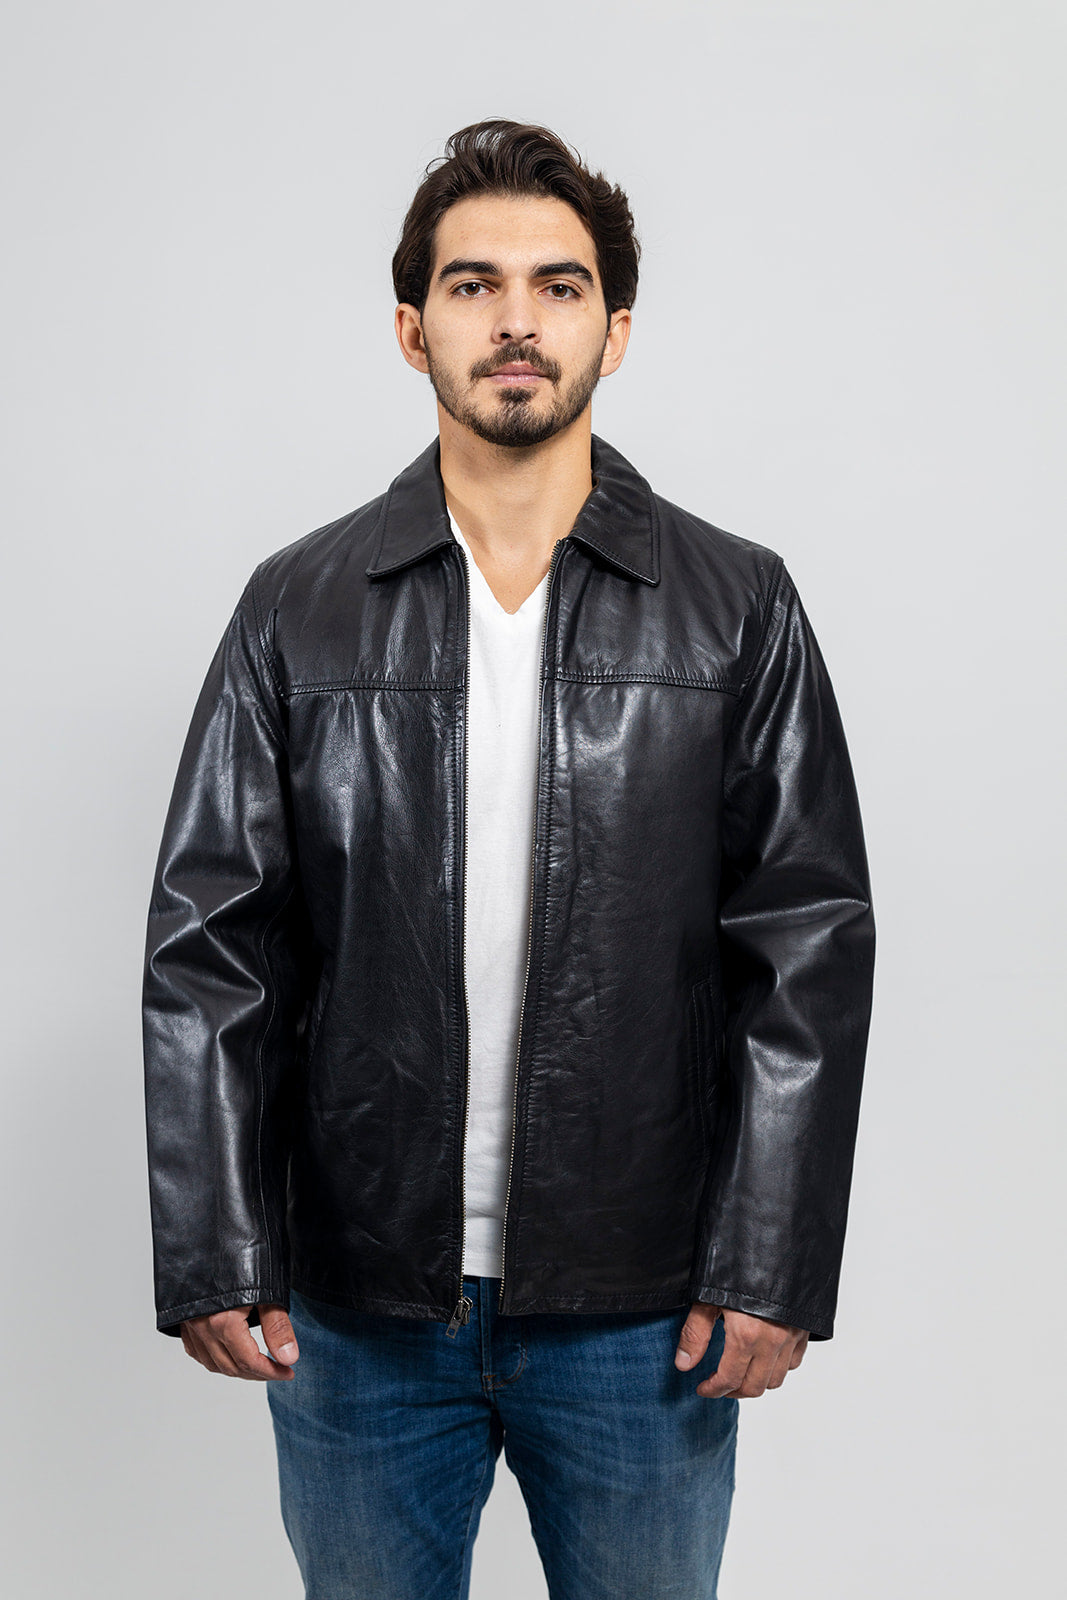 Indiana Men's Leather Jacket Black (POS) Men's Leather Jacket Whet Blu NYC   